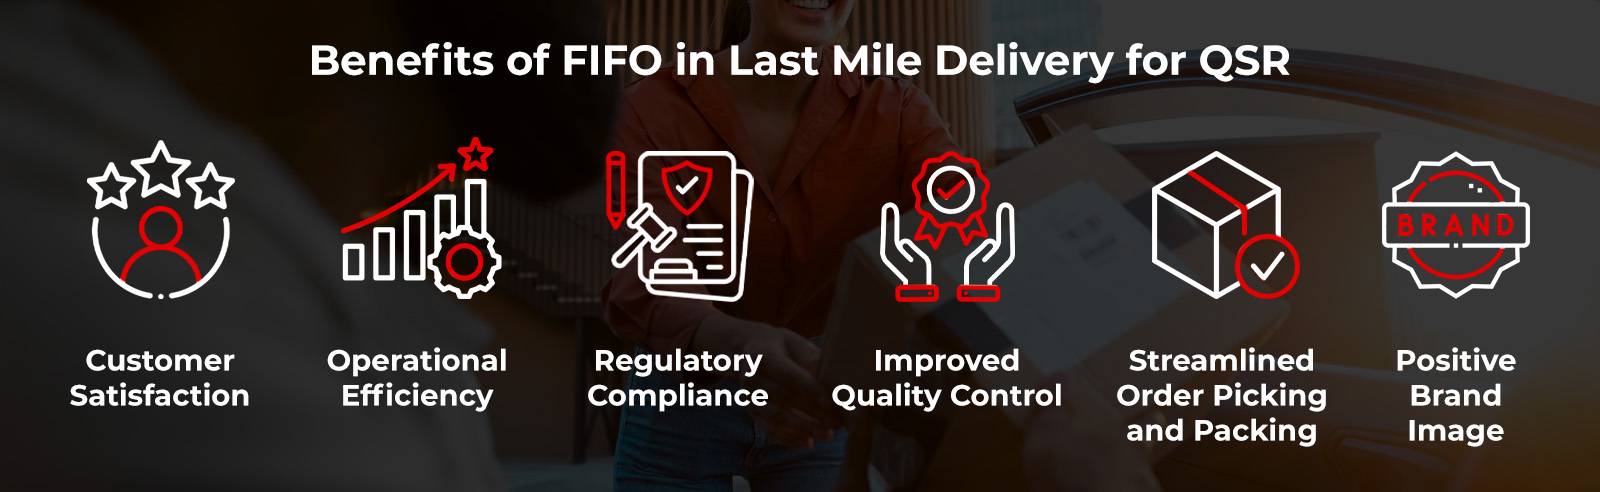 فوائد FIFO في توصيل الميل الأخير (QSR).